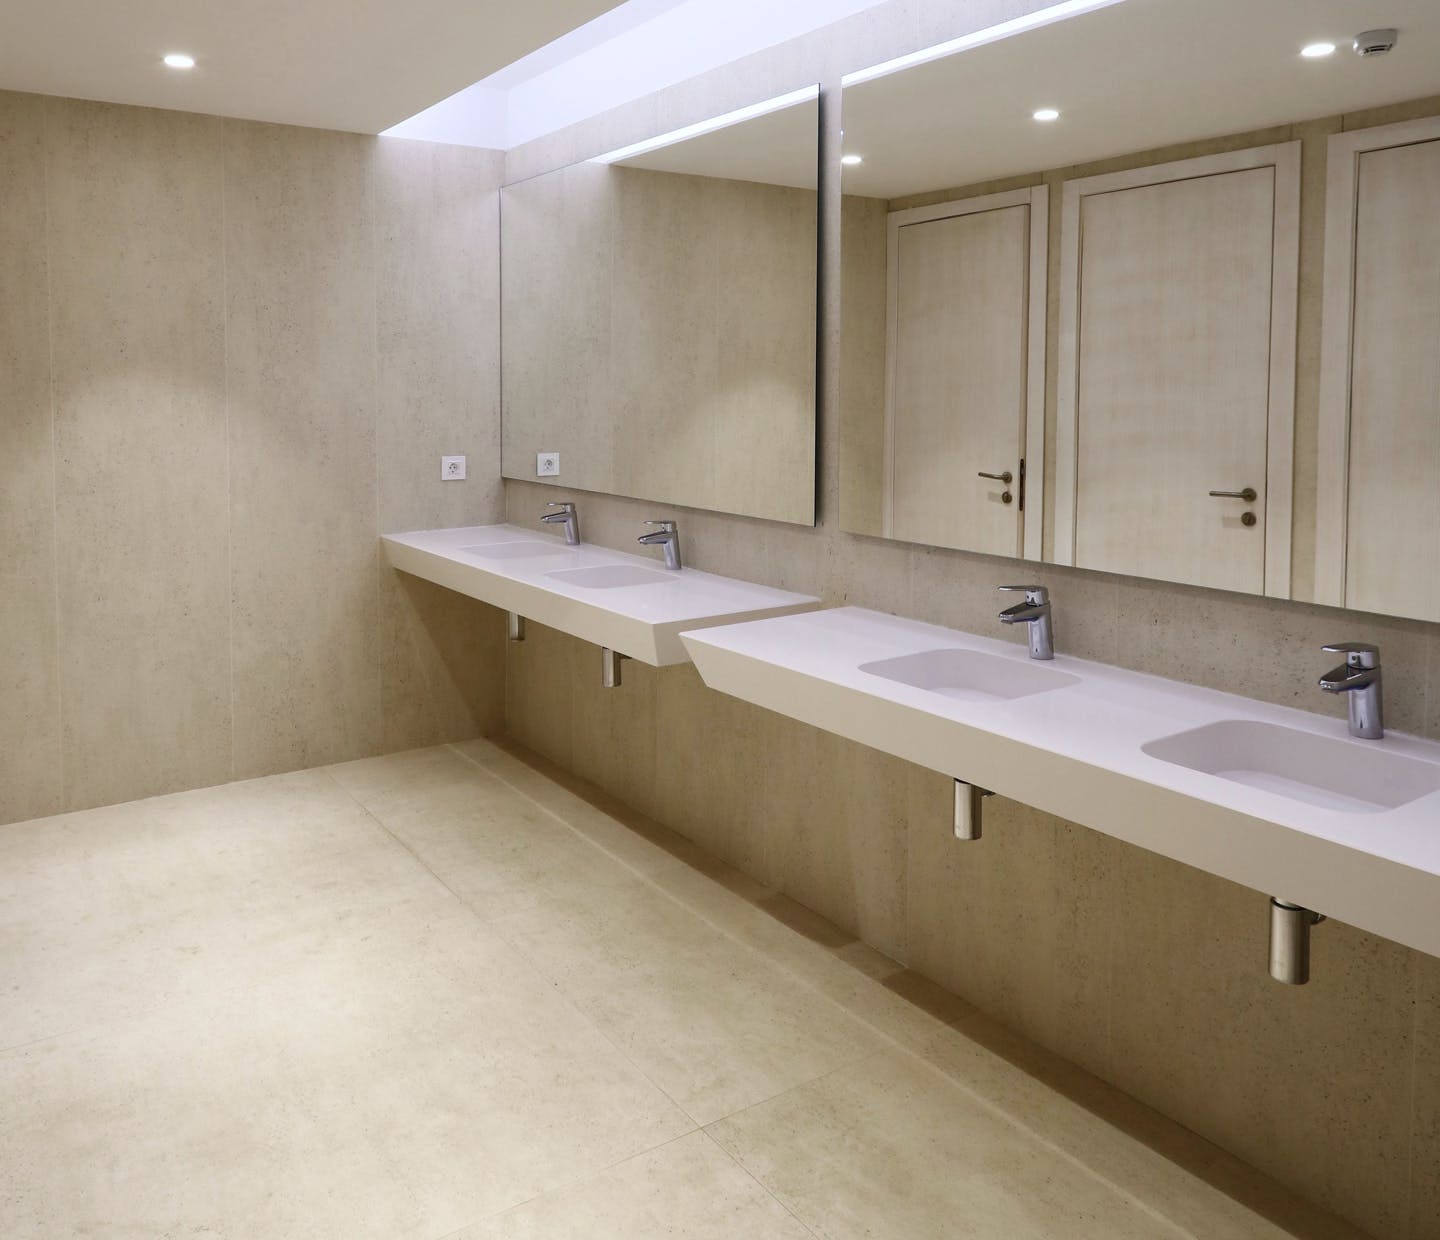 Benzersiz malzemelerle tasarım işi banyolar  - Soluciones Integrales 36